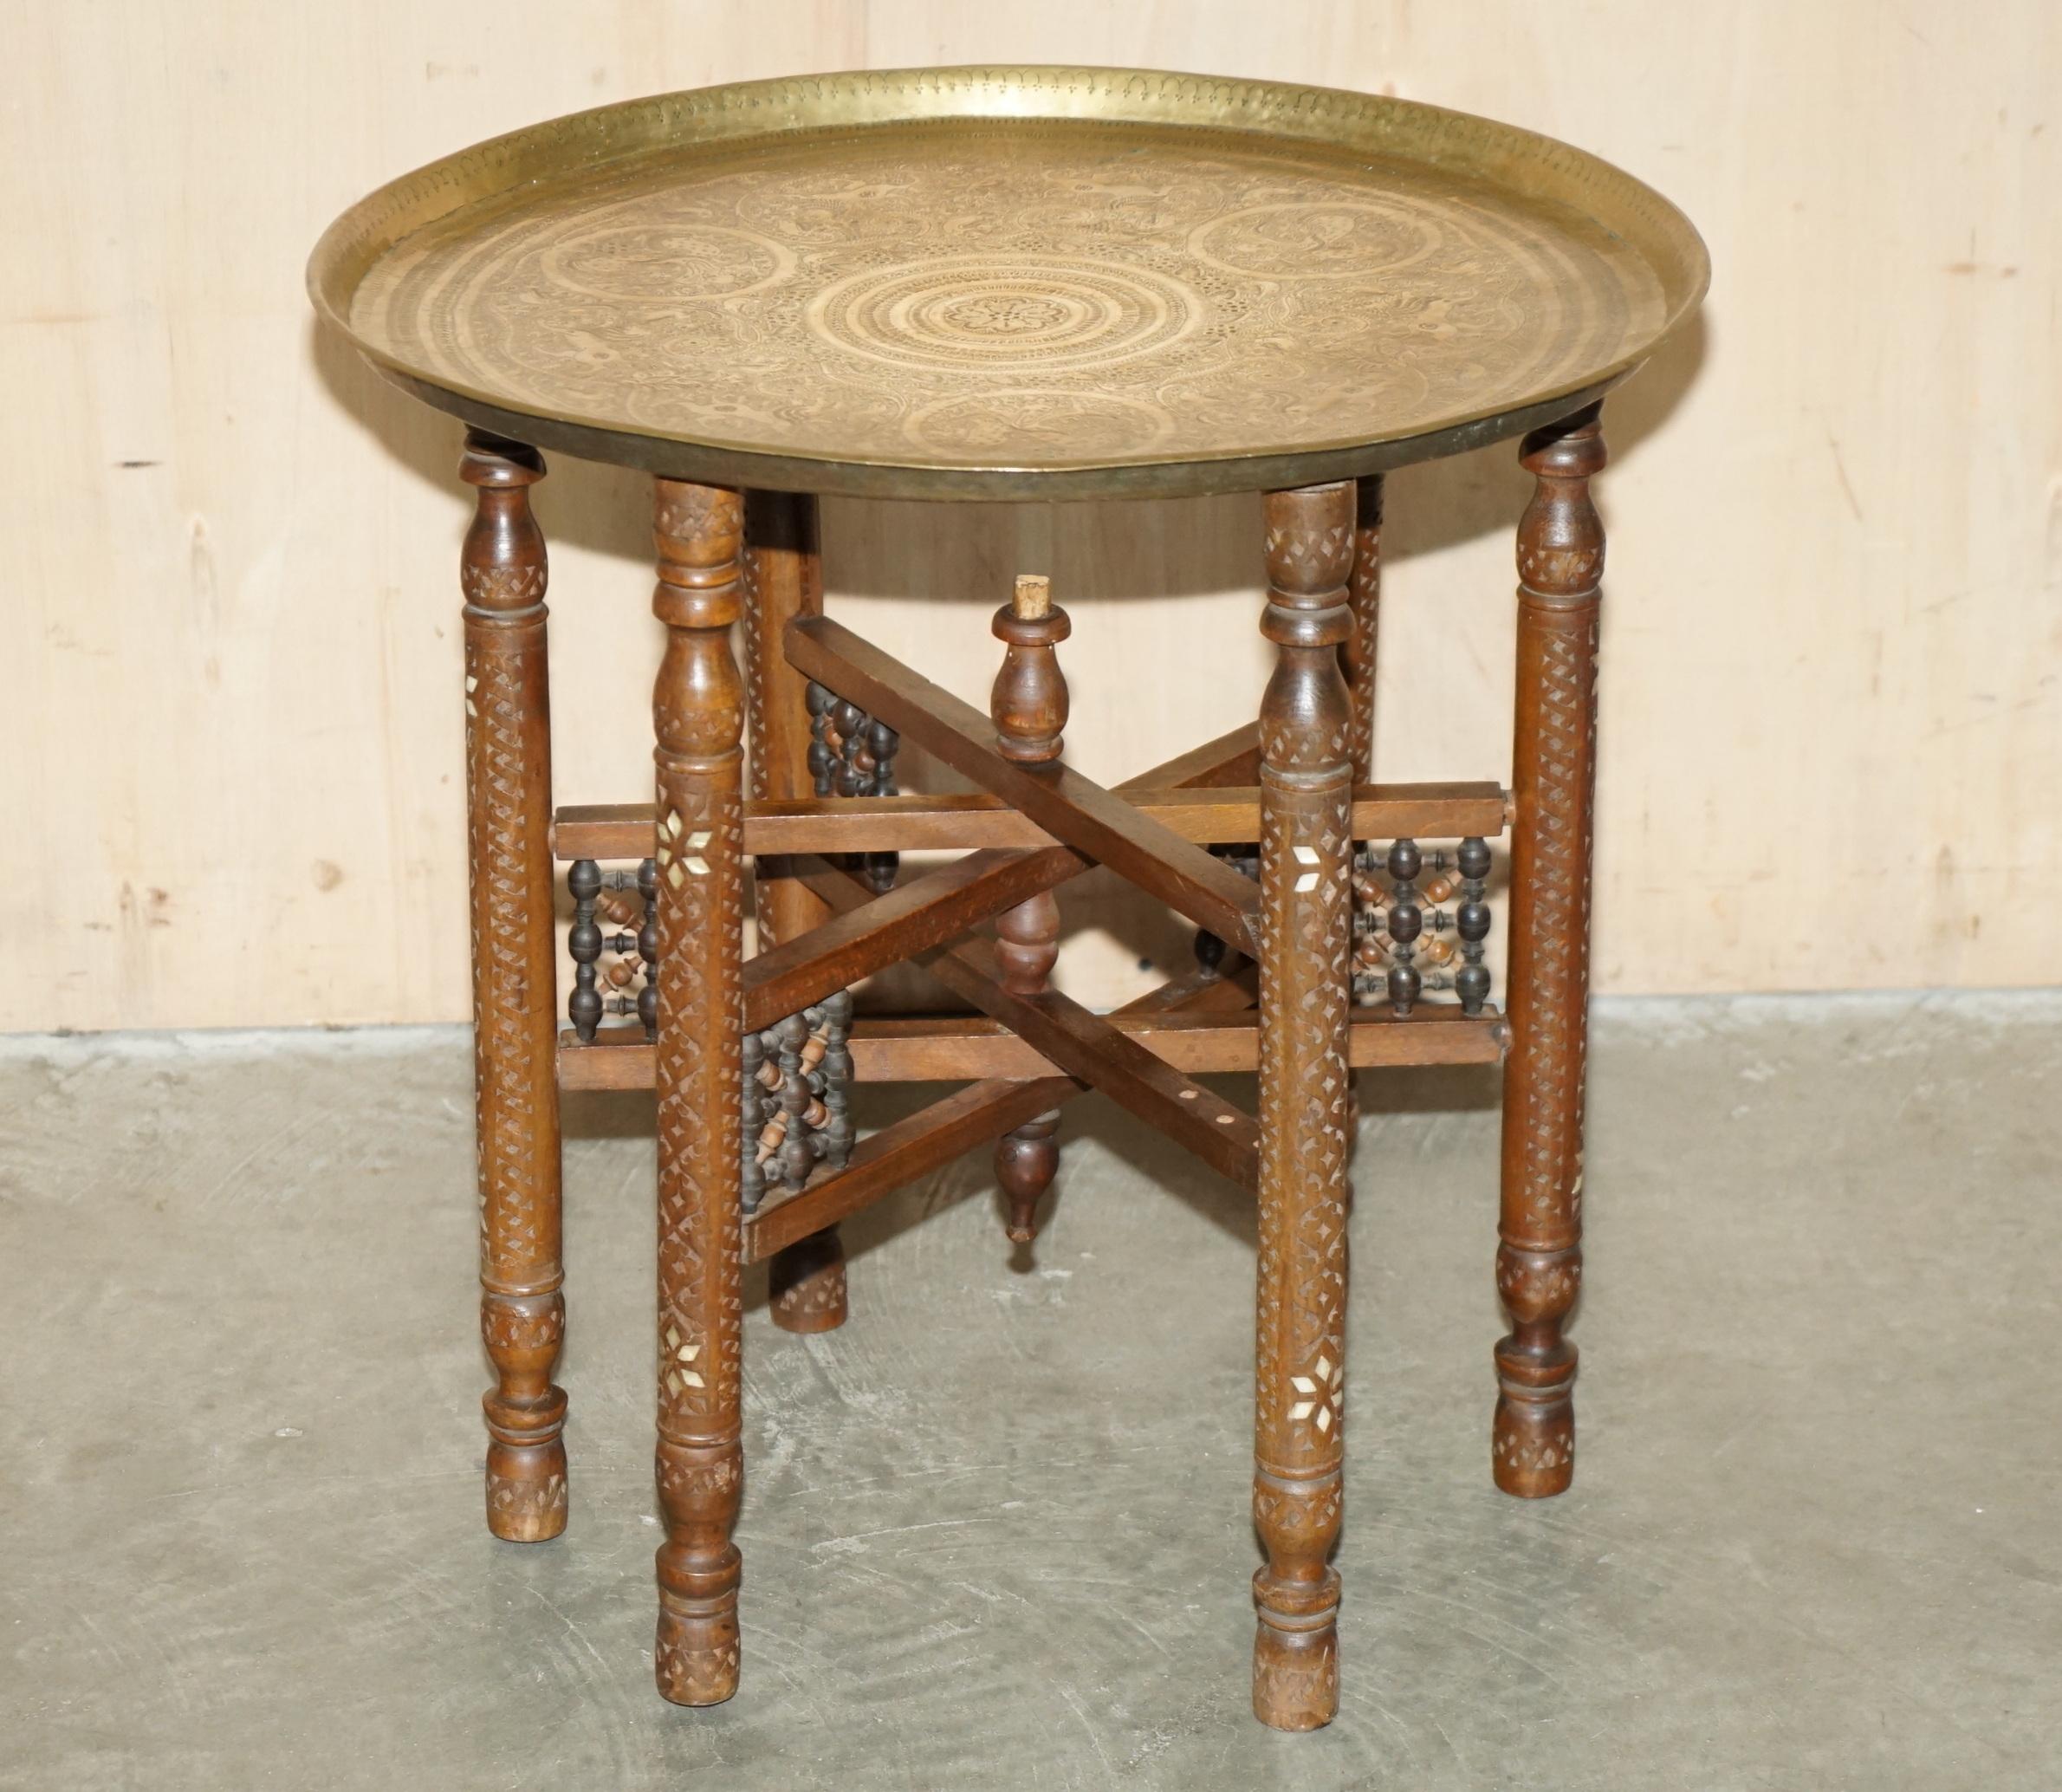 Royal House Antiques

The House Antiques a le plaisir d'offrir à la vente cette table plateau marocaine en laiton, sculptée à la main, vendue par Liberty's dans les années 1880-1900, avec des gravures de style Zodiac. 

Veuillez noter que les frais